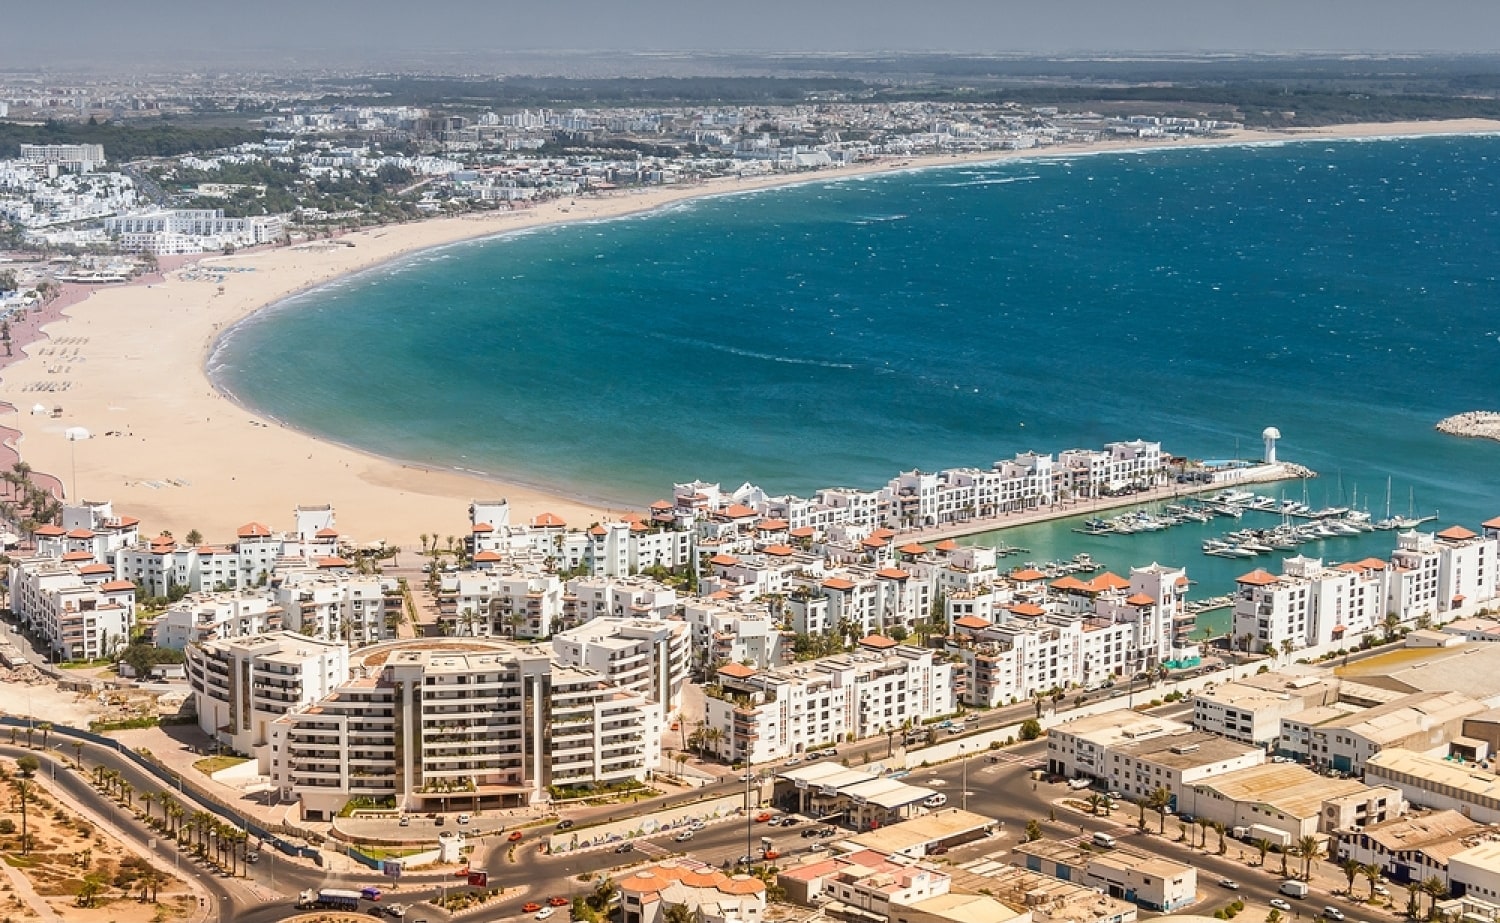 An arial view of Agadir, Morocco